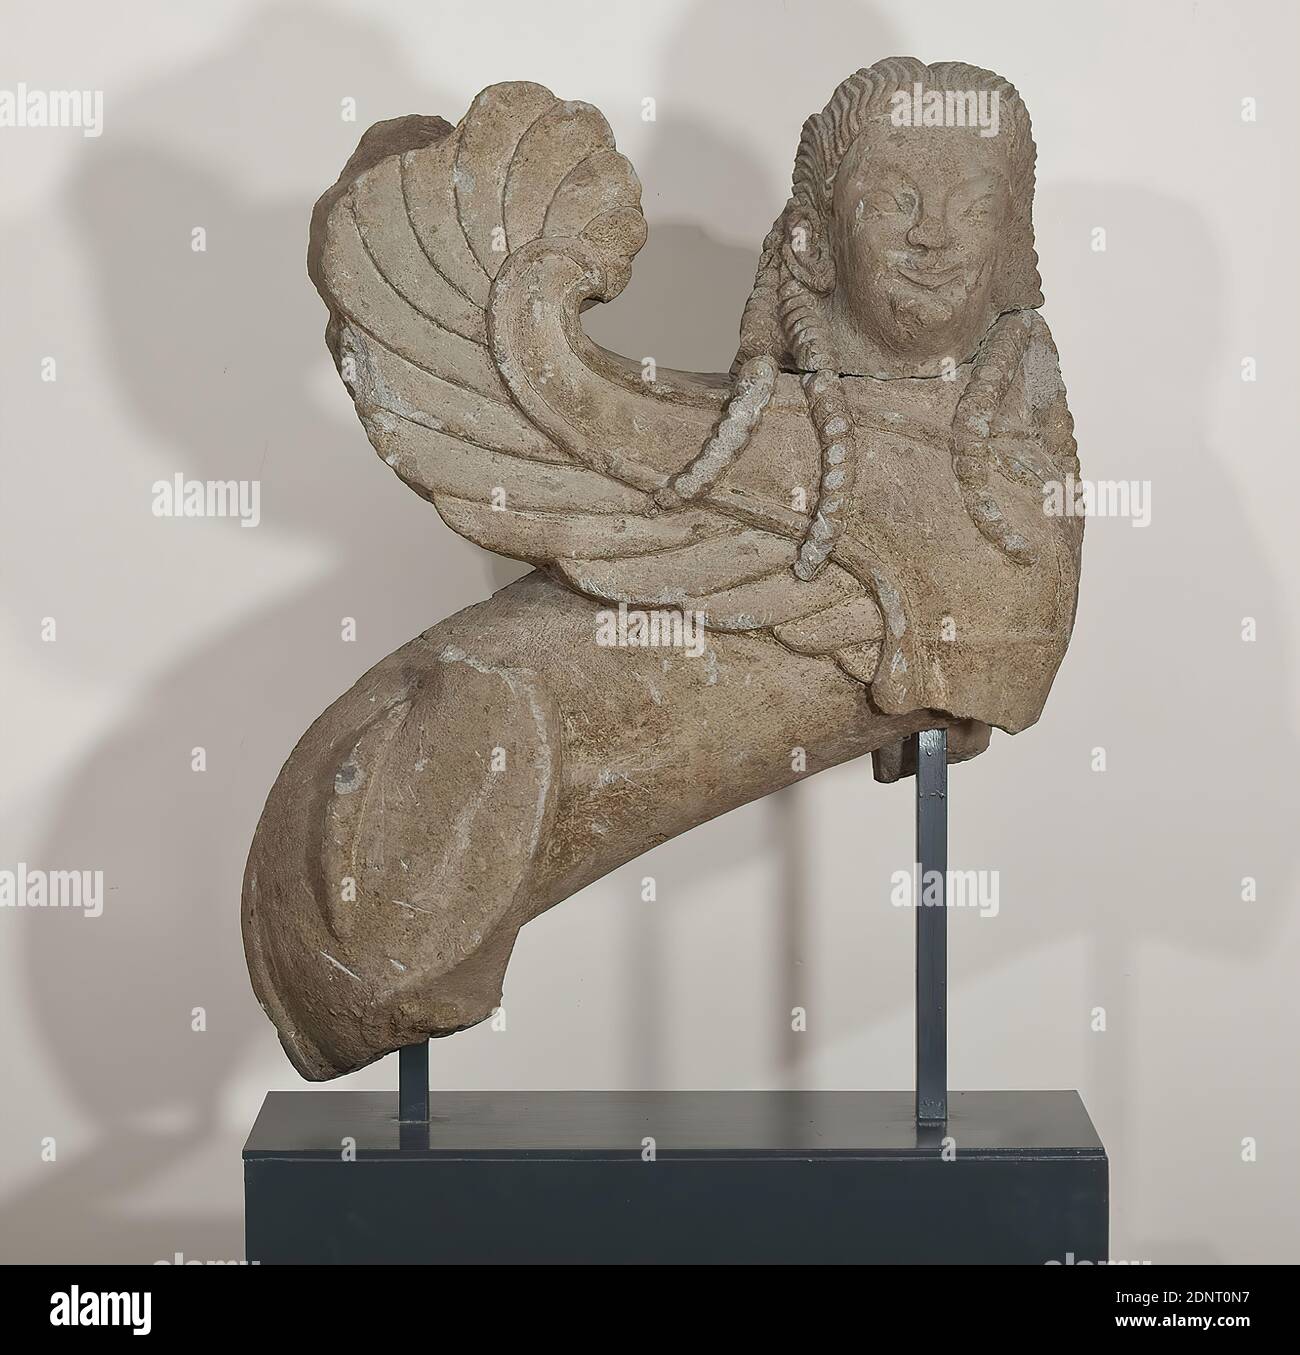 Esfinge, Tuff, cincelado, Tuff Nenfro, cincelado, total: Altura: 100.00 cm; ancho: 85.00 cm; profundidad: 33.00 cm, esculturas, monumento funerario, mobiliario funerario, Esfinge, la 'Esfinge de Hamburgo' en el esquema común de asientos griegos es uno de los mejores ejemplos de escultura arcaica etrusca preservada. El cuerpo cilíndrico del león del poderoso híbrido se muestra en el perfil, mientras que la cabeza en forma humana mira al observador frontally. Las alas están curvadas hacia arriba en forma de hoz, la cola está curvada alrededor del muslo trasero derecho. Foto de stock